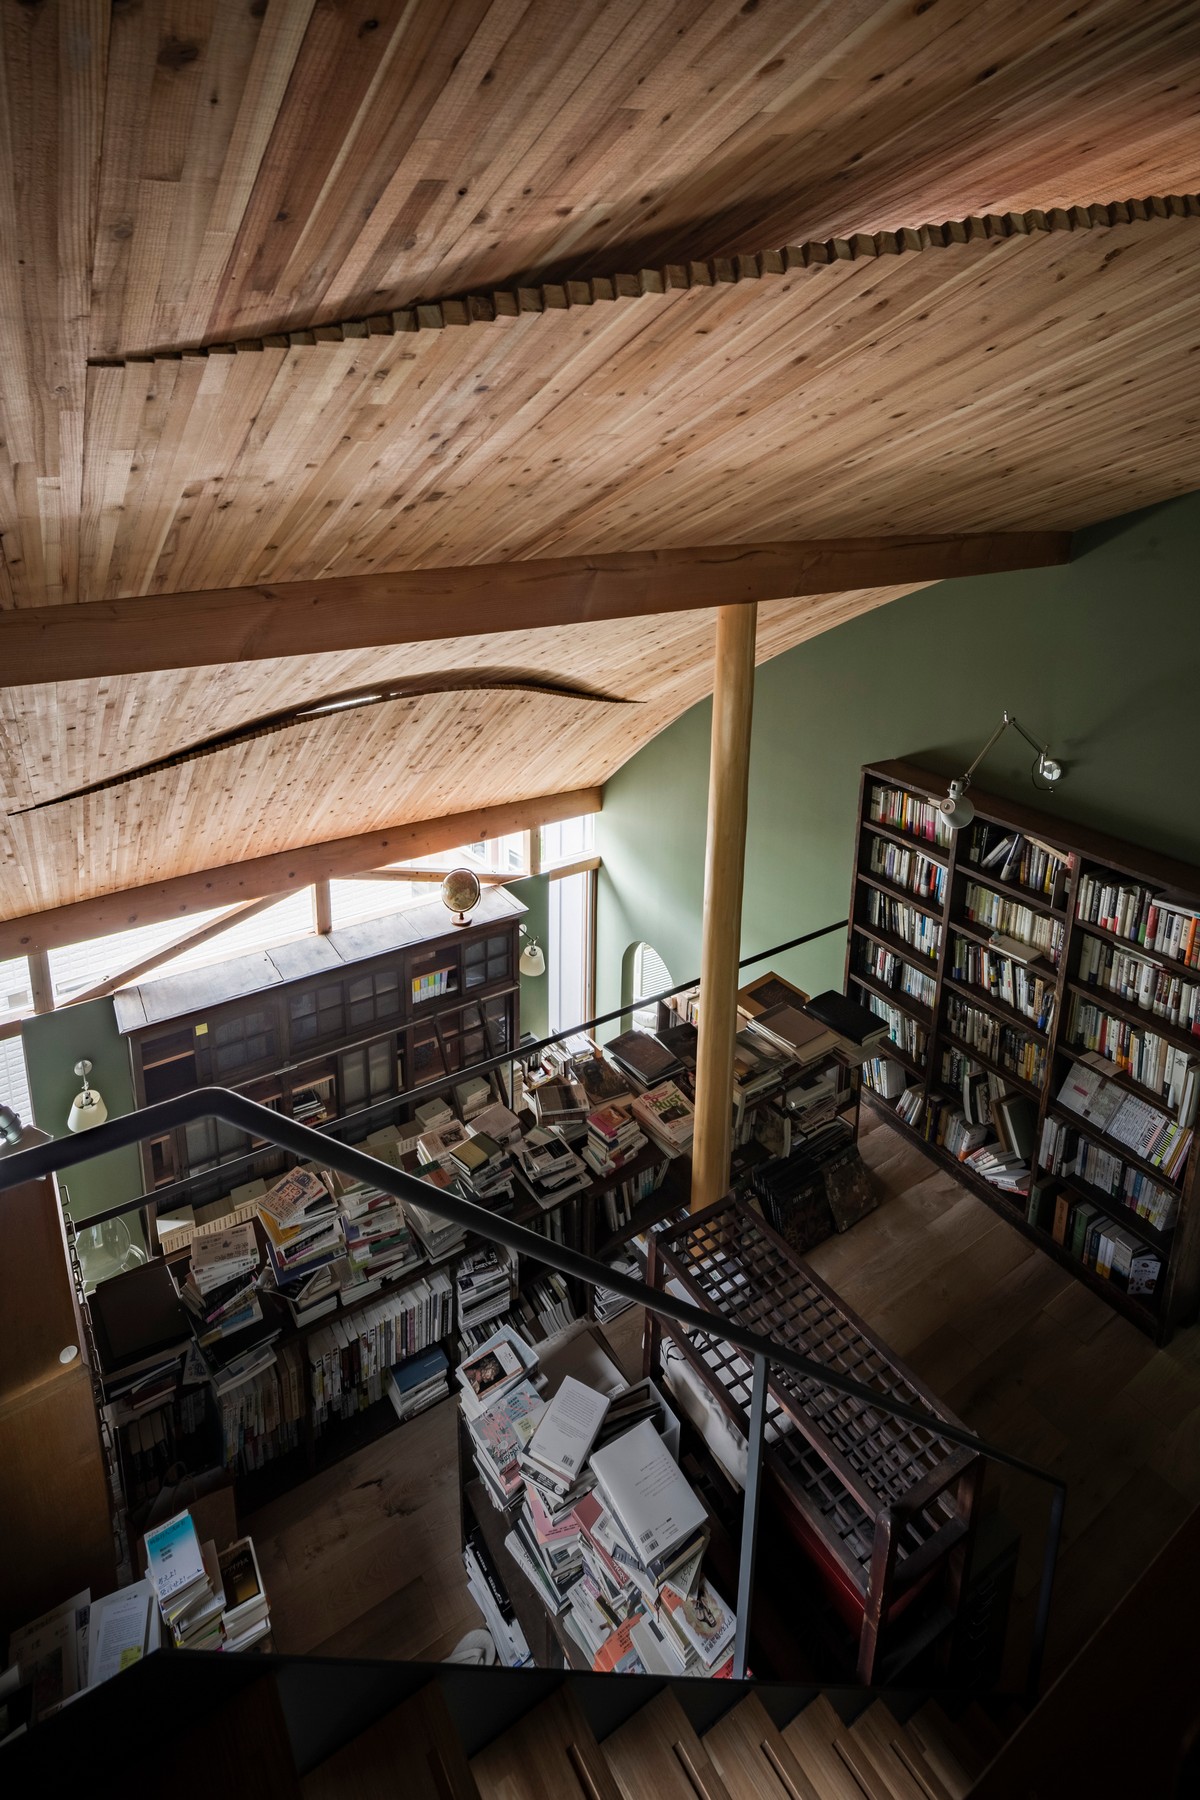 Двухэтажный дом-библиотека для жизни и работы в Японии пространство, работы, занимают, имеет, Двухэтажный, является, гостиная, приятно, мебель, метров, полок, библиотеки, книжных, квадратных, домбиблиотека, жизни, помещения, будто, кажется, частей